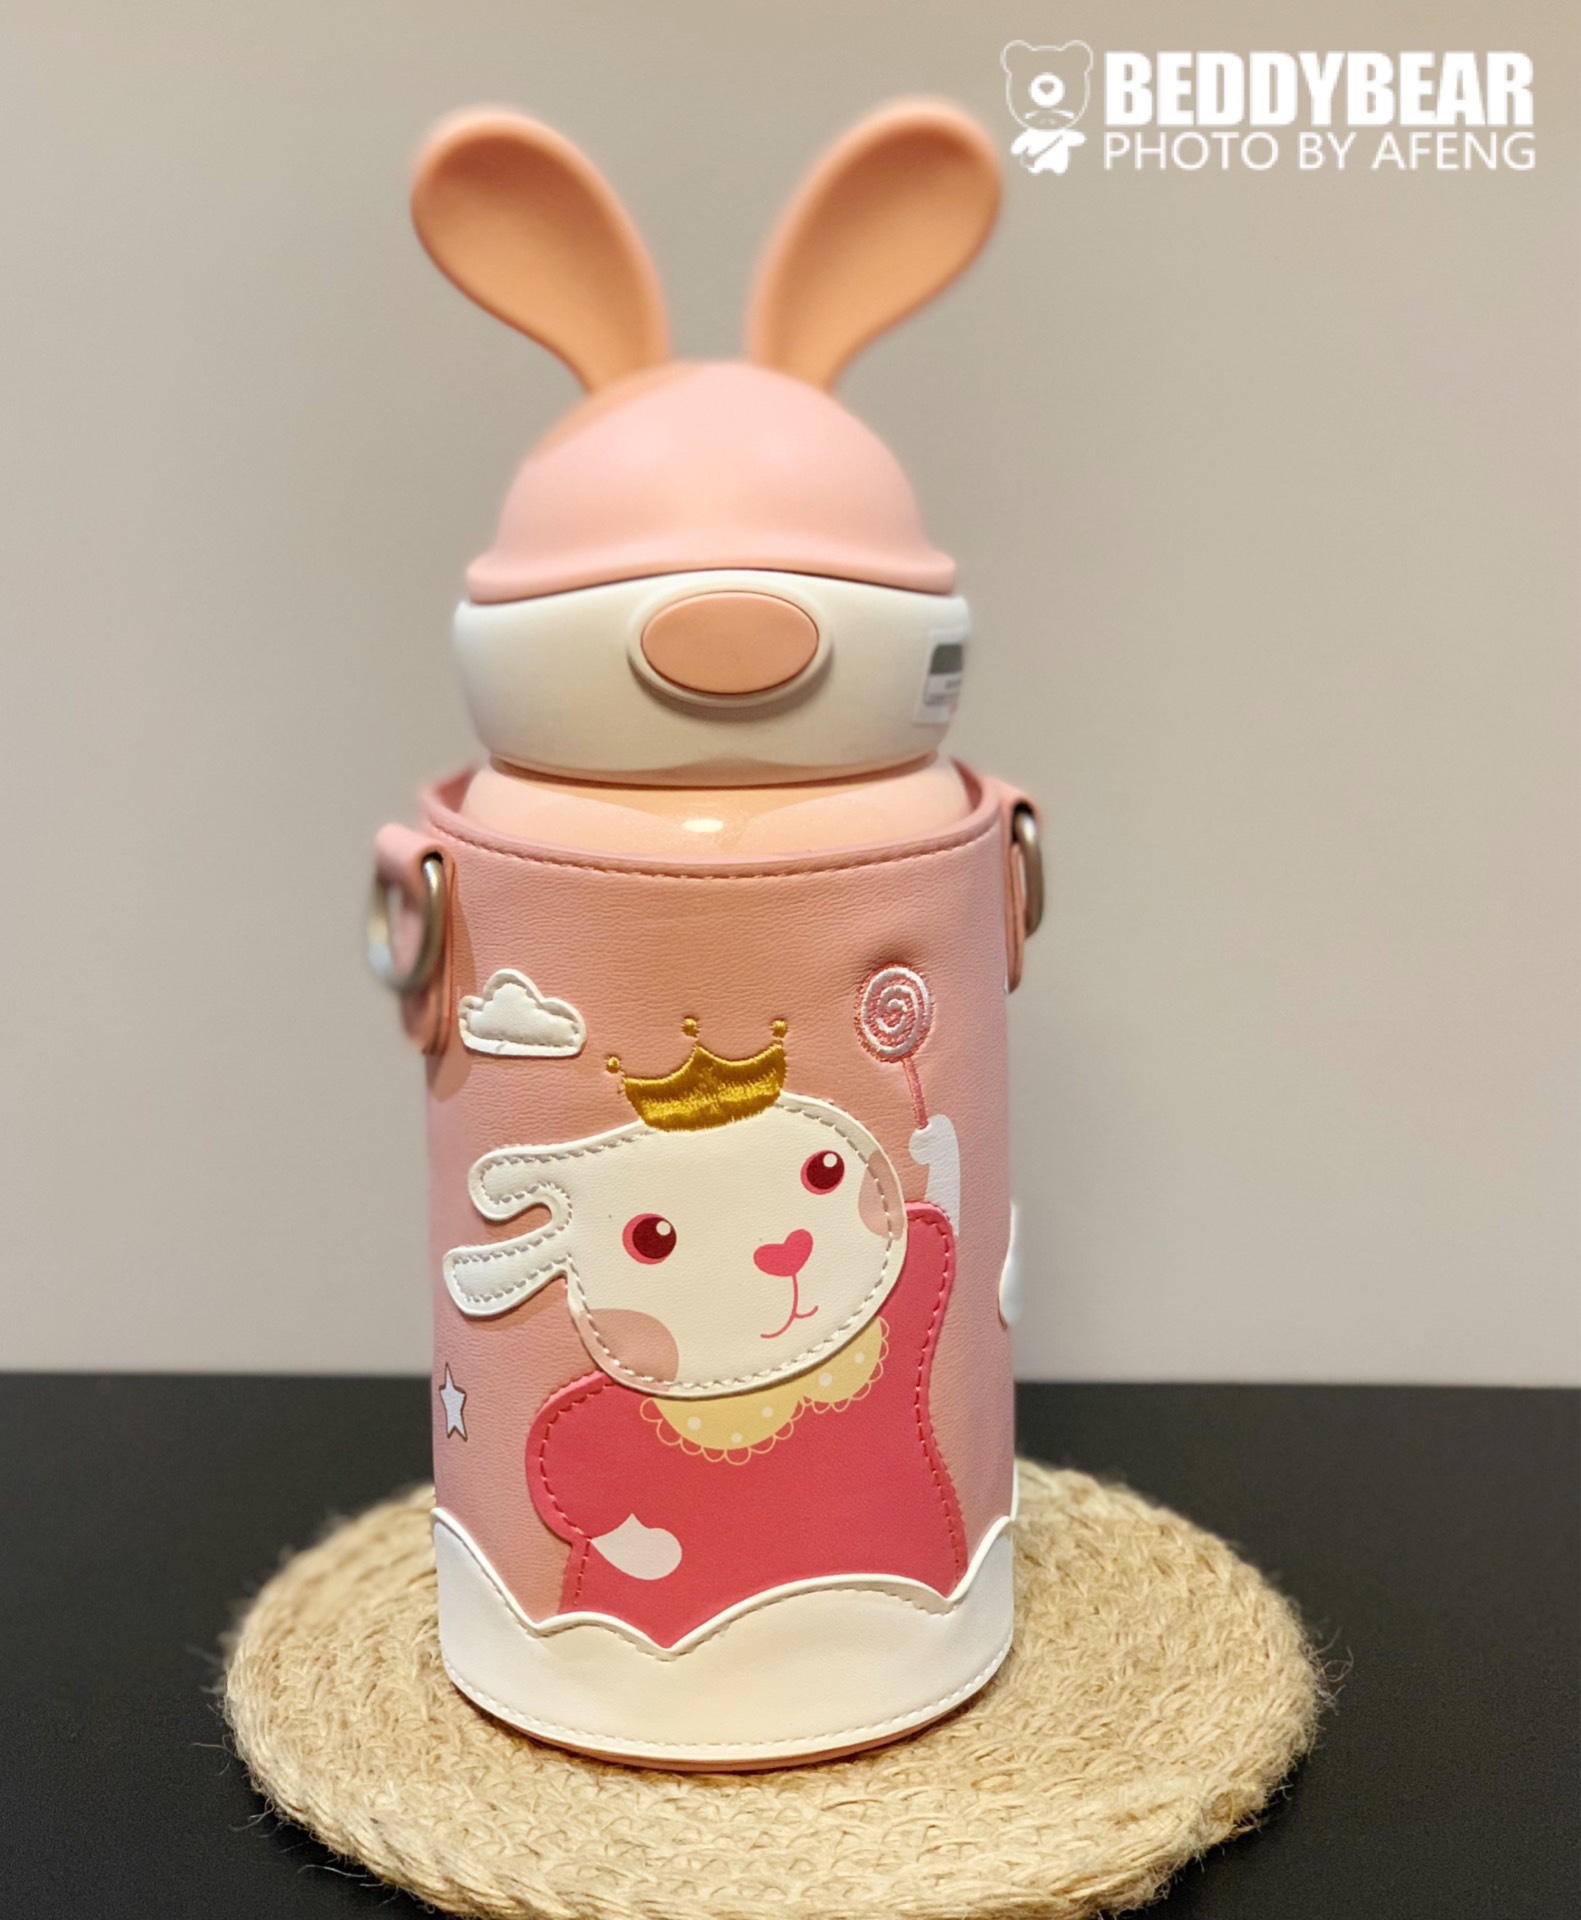 坐在杯子的兔子/兔宝宝 向量例证. 插画 包括有 杯子, 例证, 厨具, 全能, 设计, 查找, 友好, 少许 - 91200562